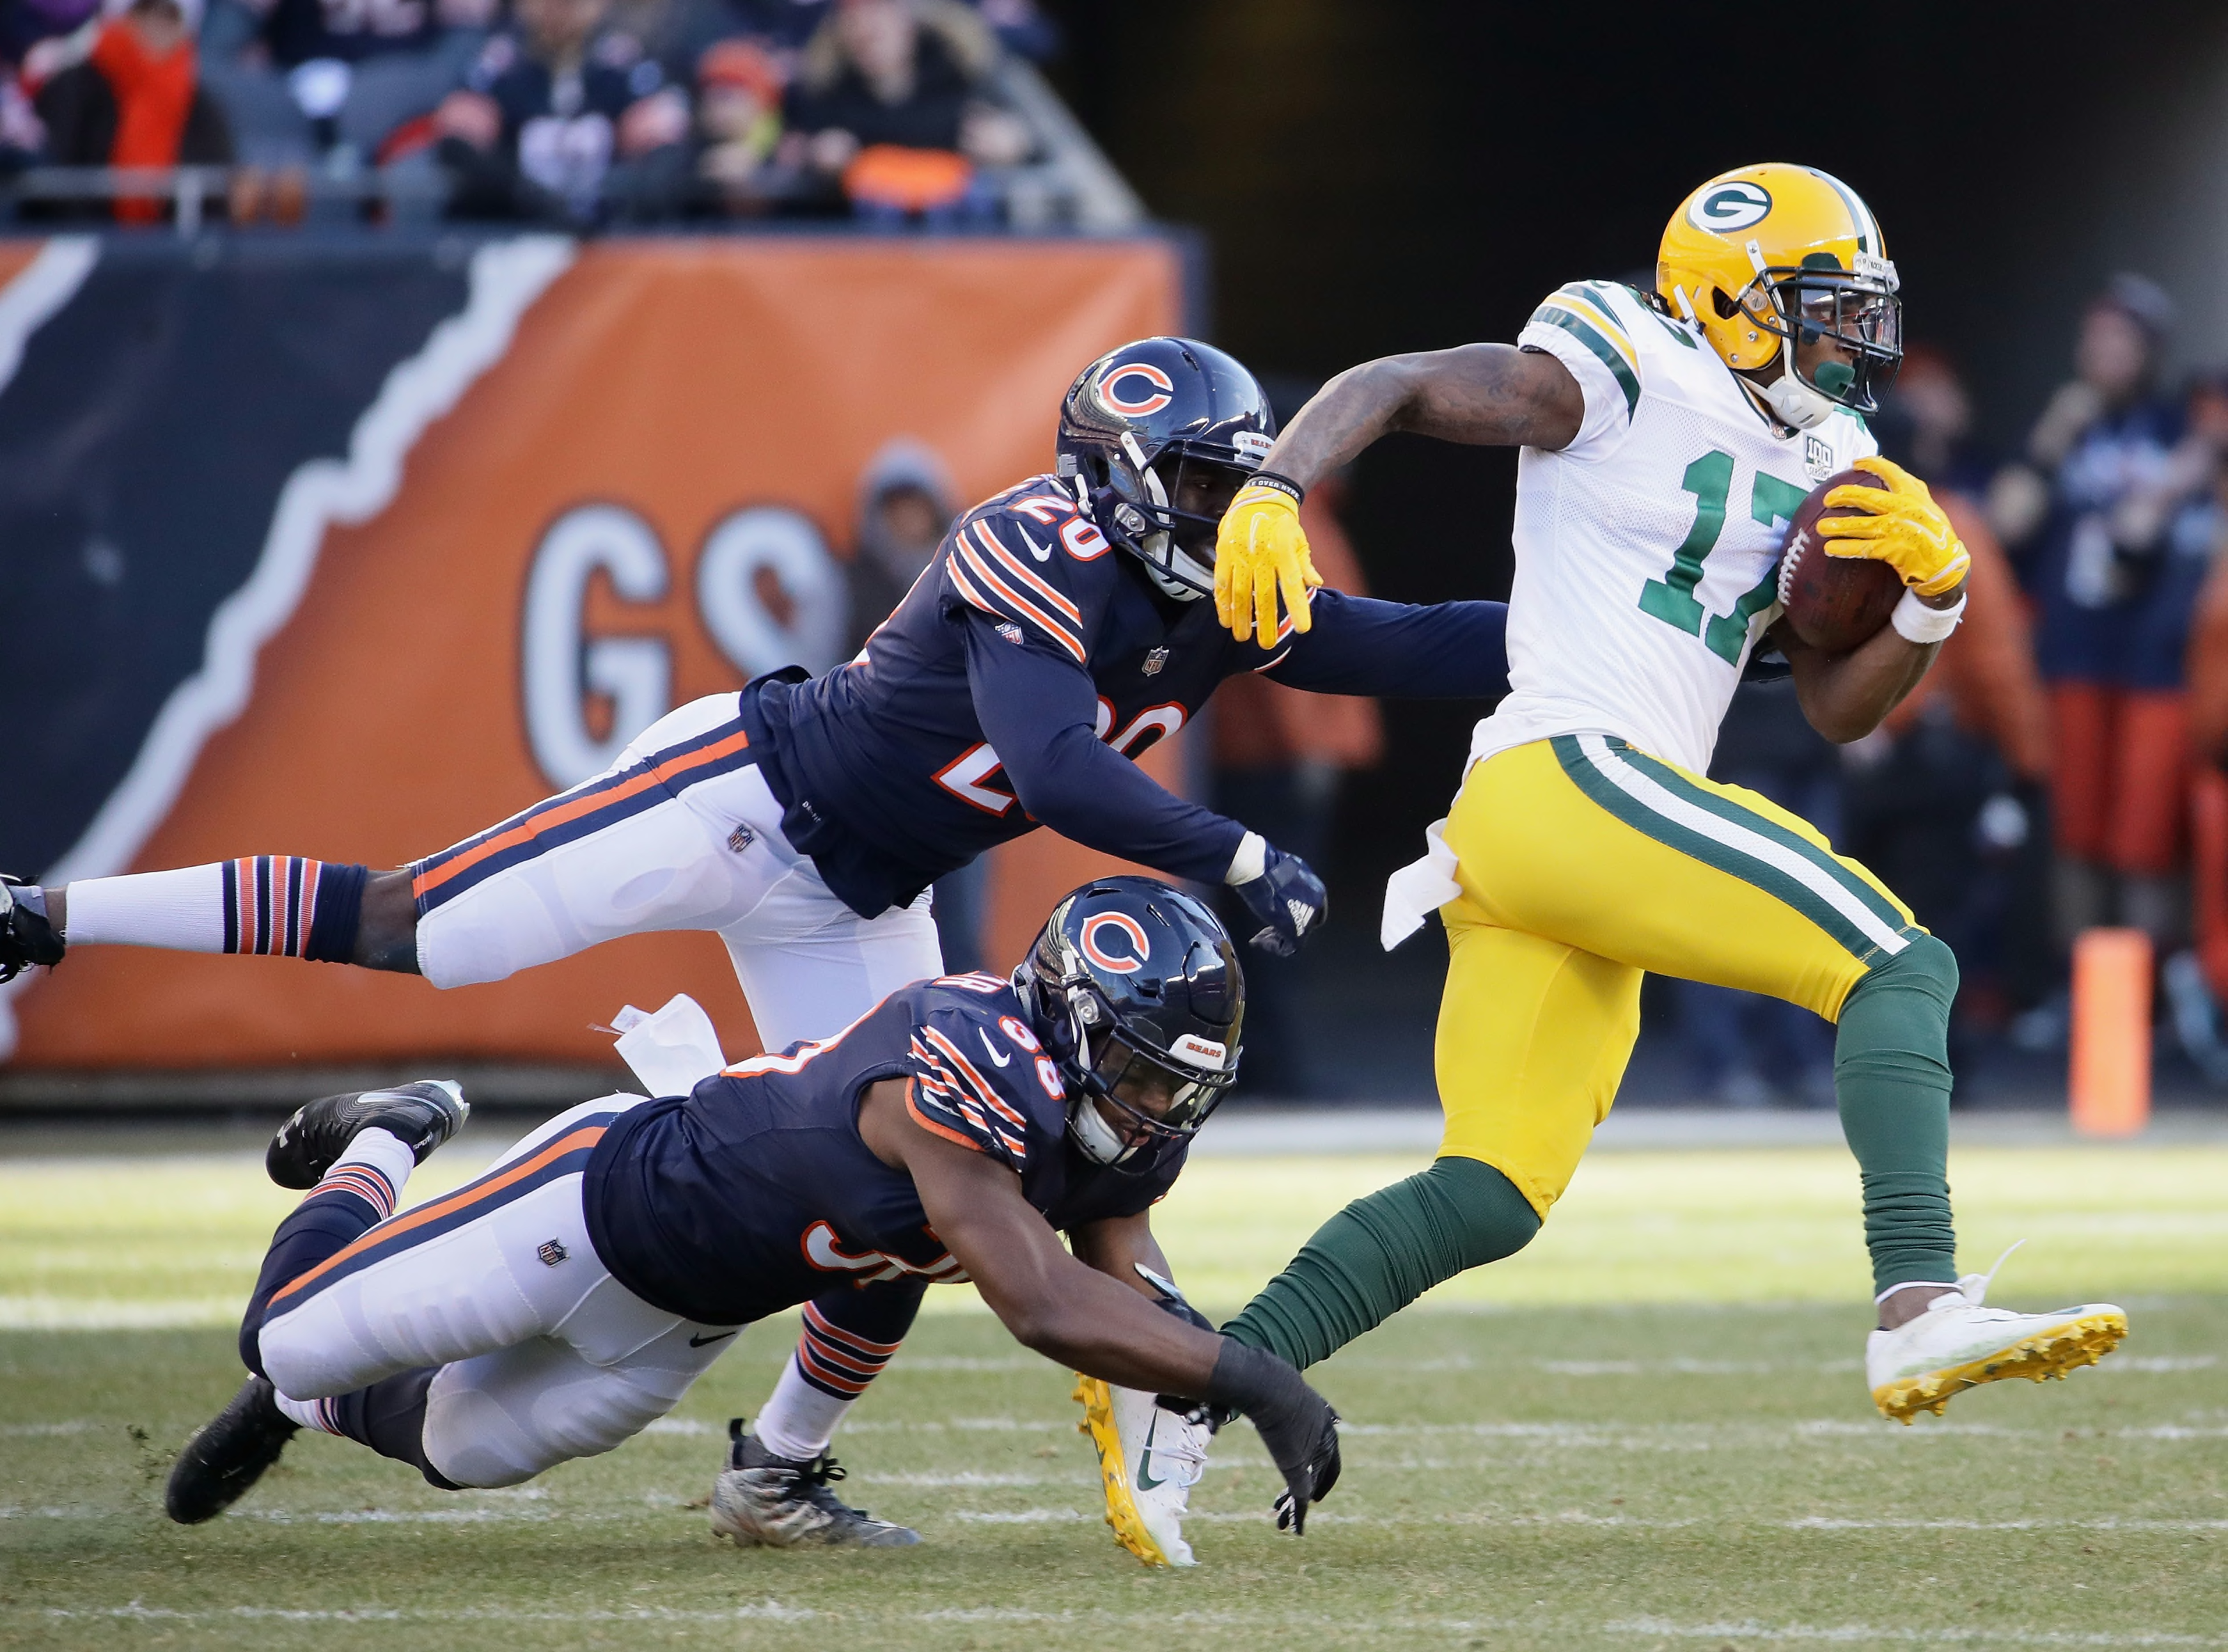 Packers: Top five performers in Week 15 loss vs. Bears